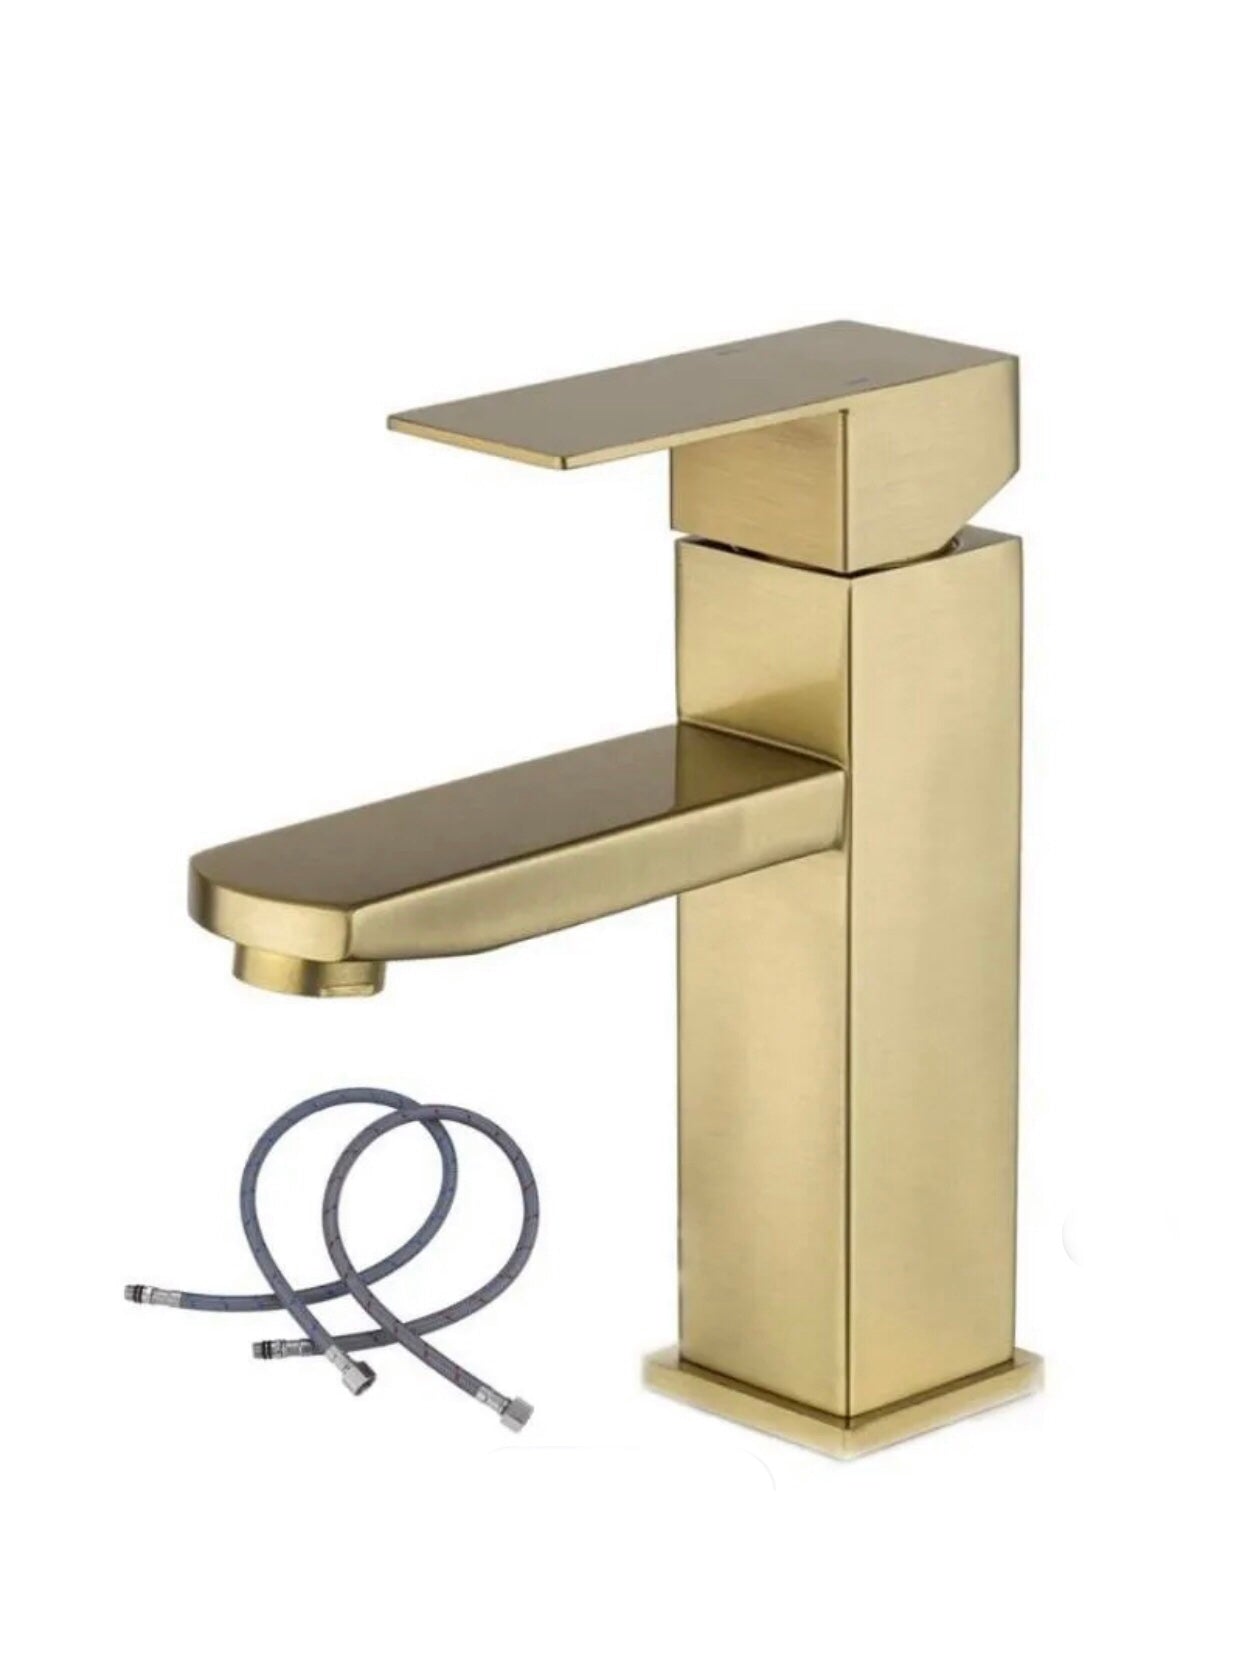 A|M Aquae Tormili Brass Taps Basin Mixer Single Handle Water Mixer Bathroom Faucet